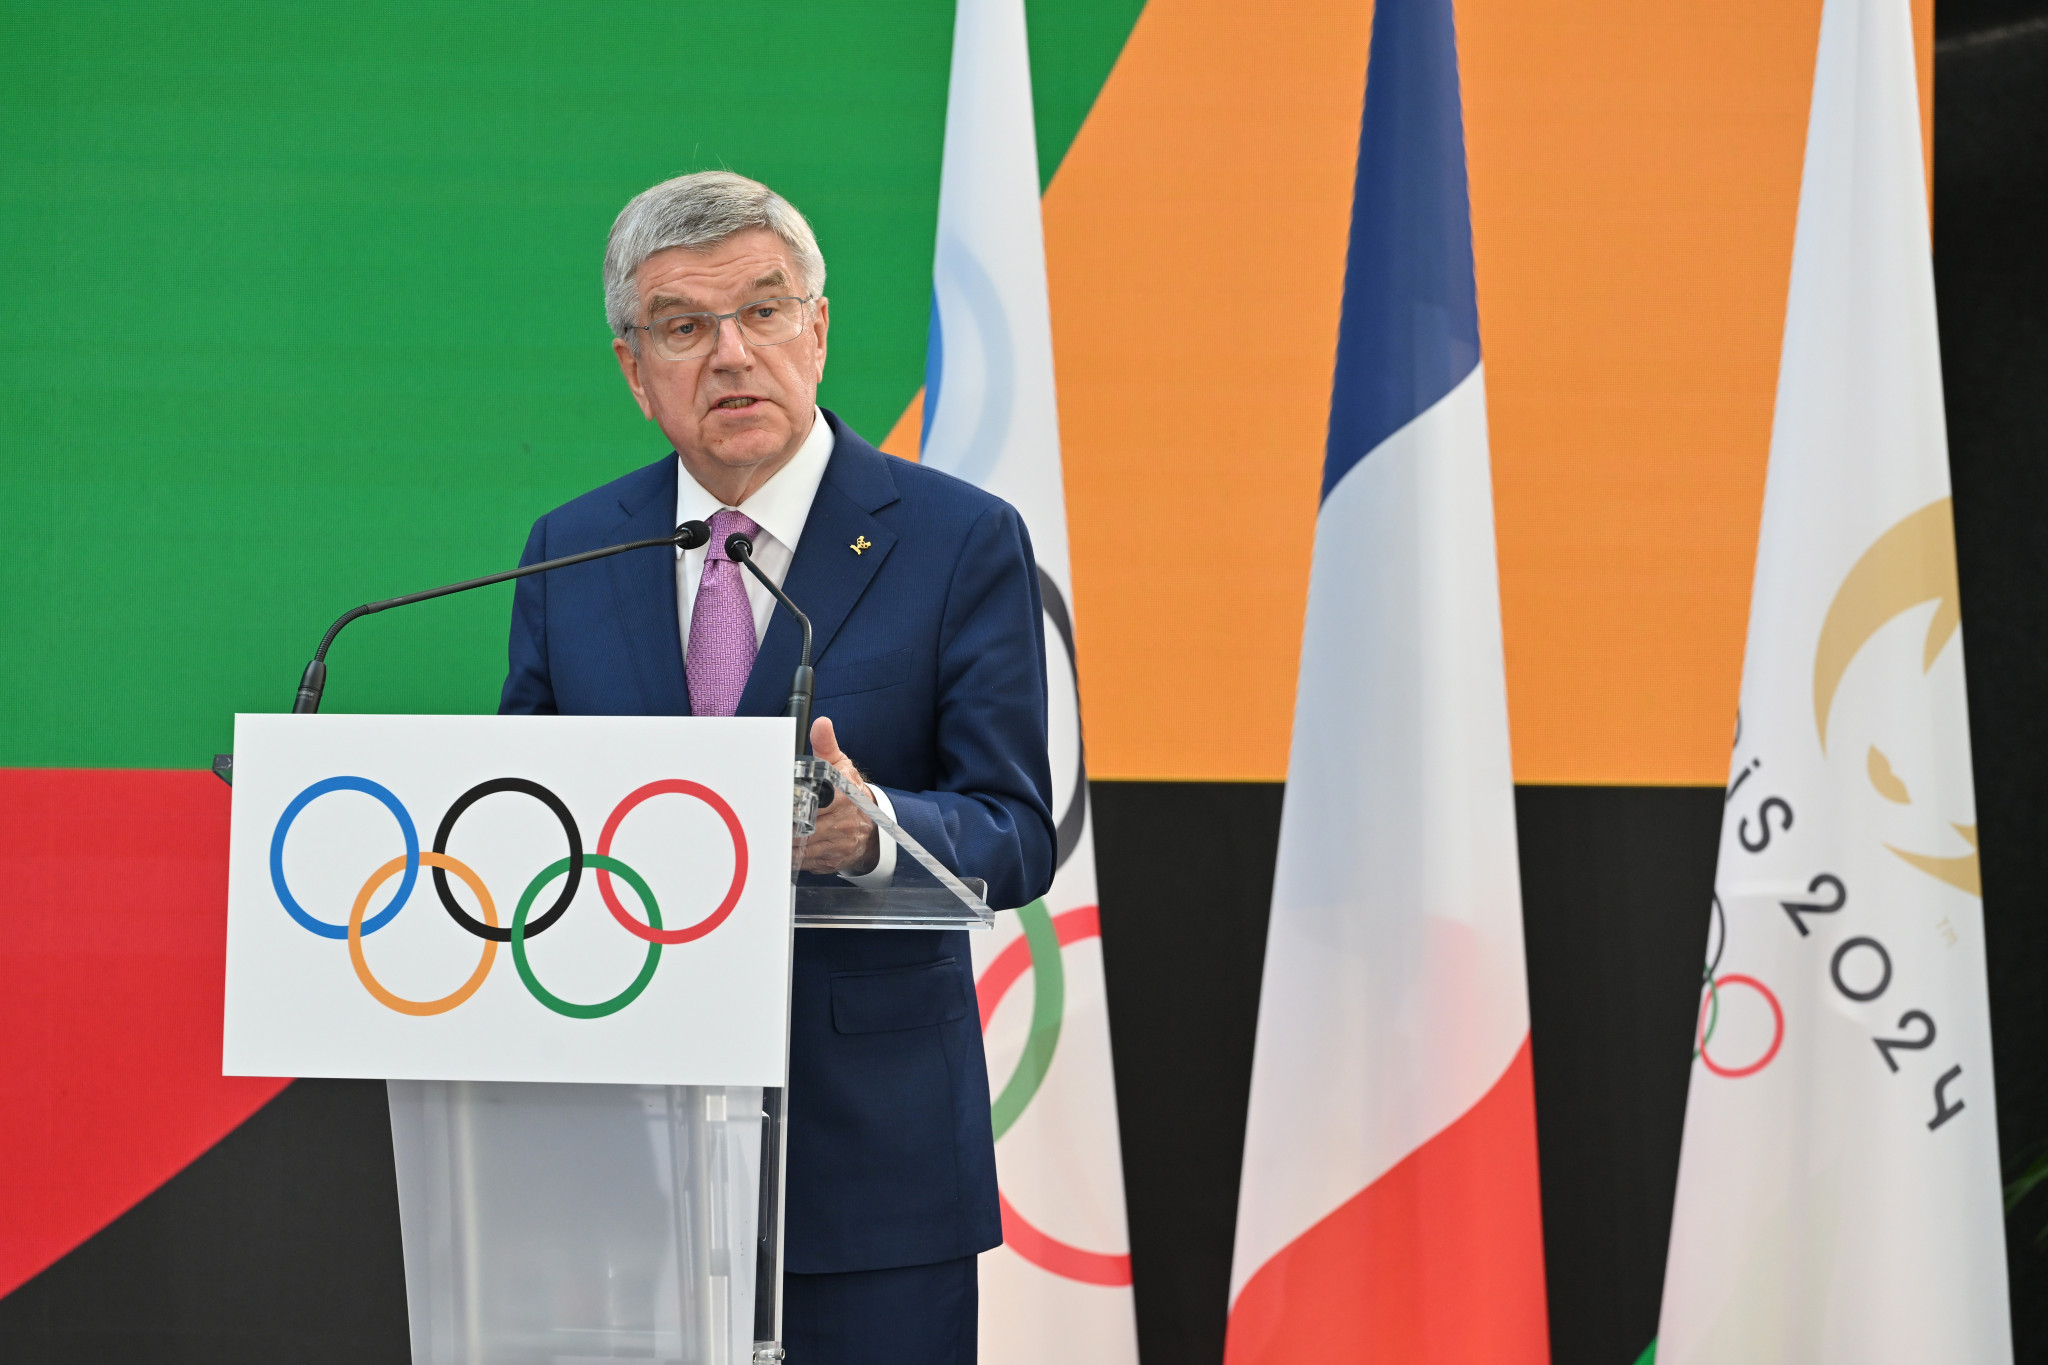 IOC President Thomas Bach said Paris 2024 would be 